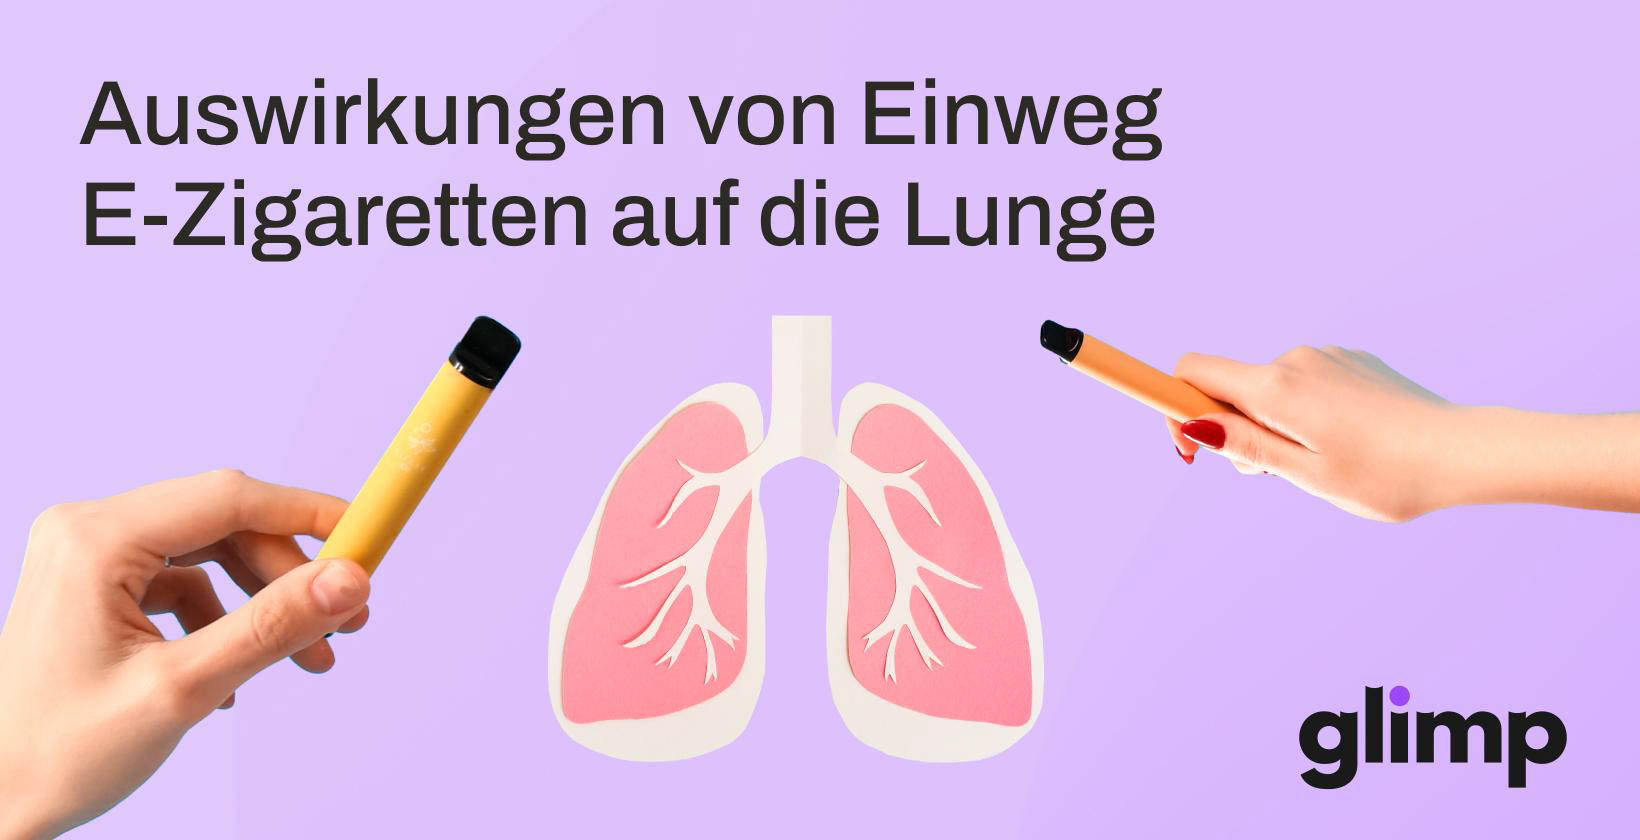 Die Auswirkungen von Einweg E-Zigaretten auf die Lunge